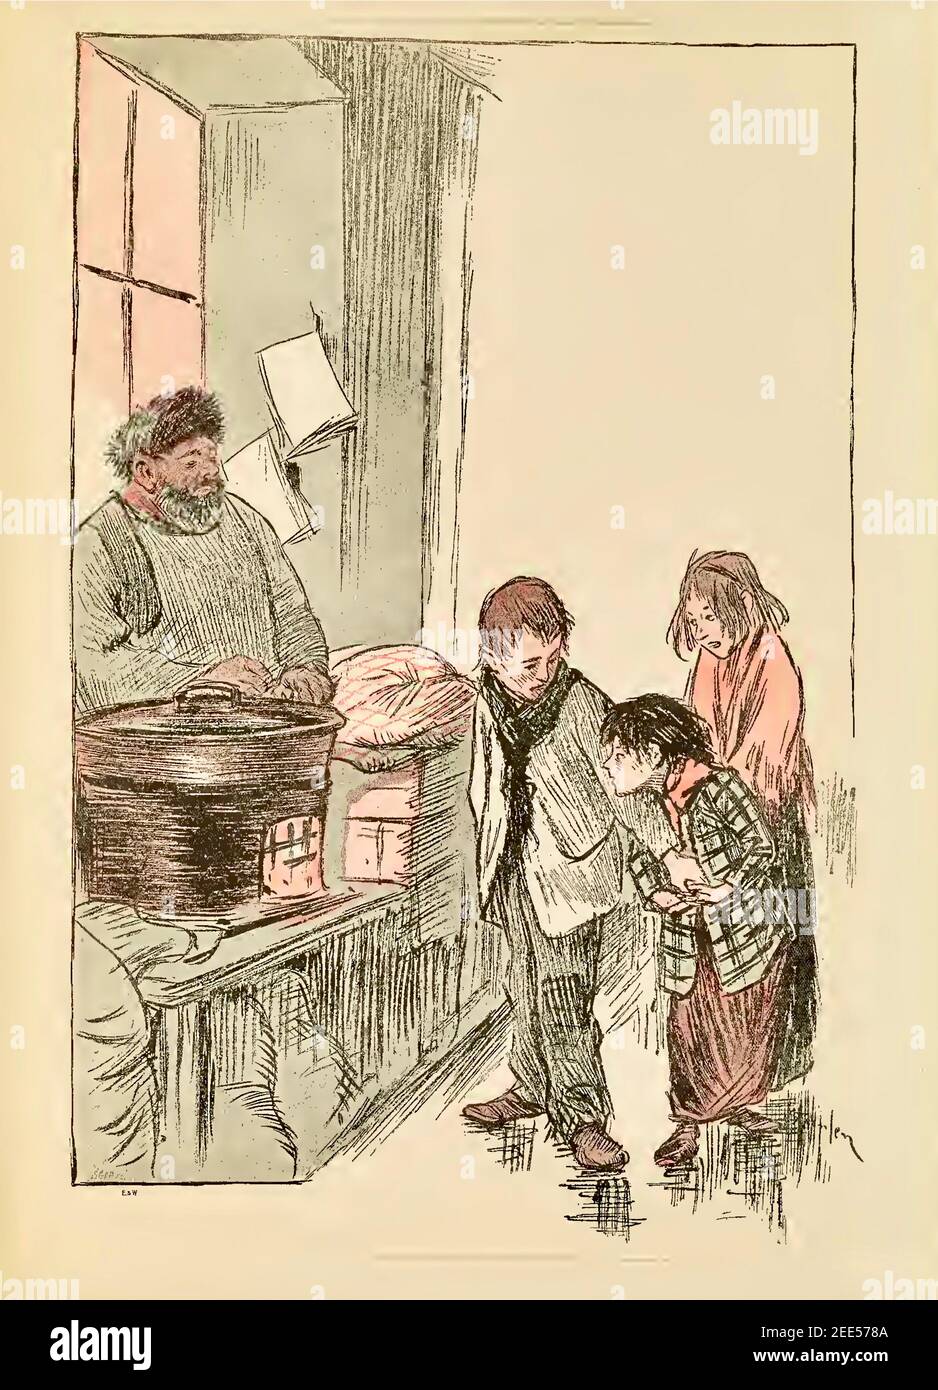 Trois enfants réchauffent leurs mains sur les châtaignes chaudes résistant L'envie de manger dans cette œuvre d'art vintage de Theophile Steinlen Banque D'Images